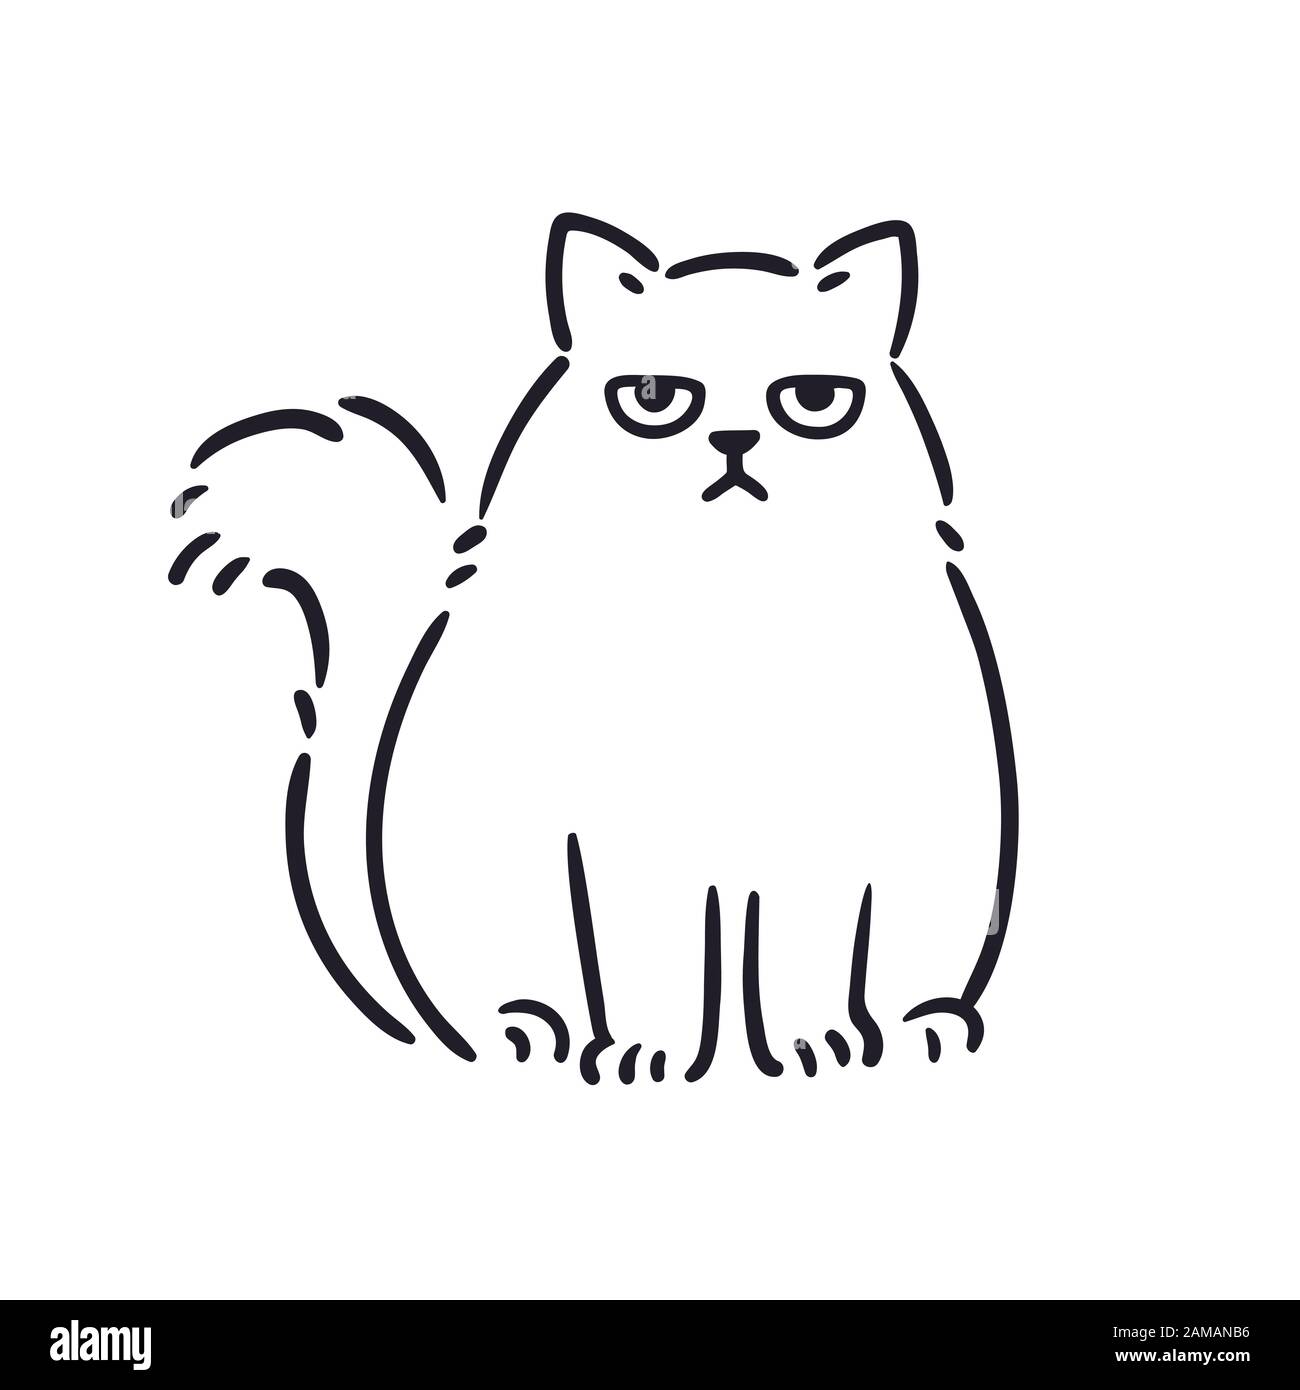 Cartoon-Zeichnung von mürrisch aussehender fetter Katze. Witzig ärgerte weiße Perserkatze, handgezeichnete Skizze. Isolierte Grafik für Vektorclips. Stock Vektor